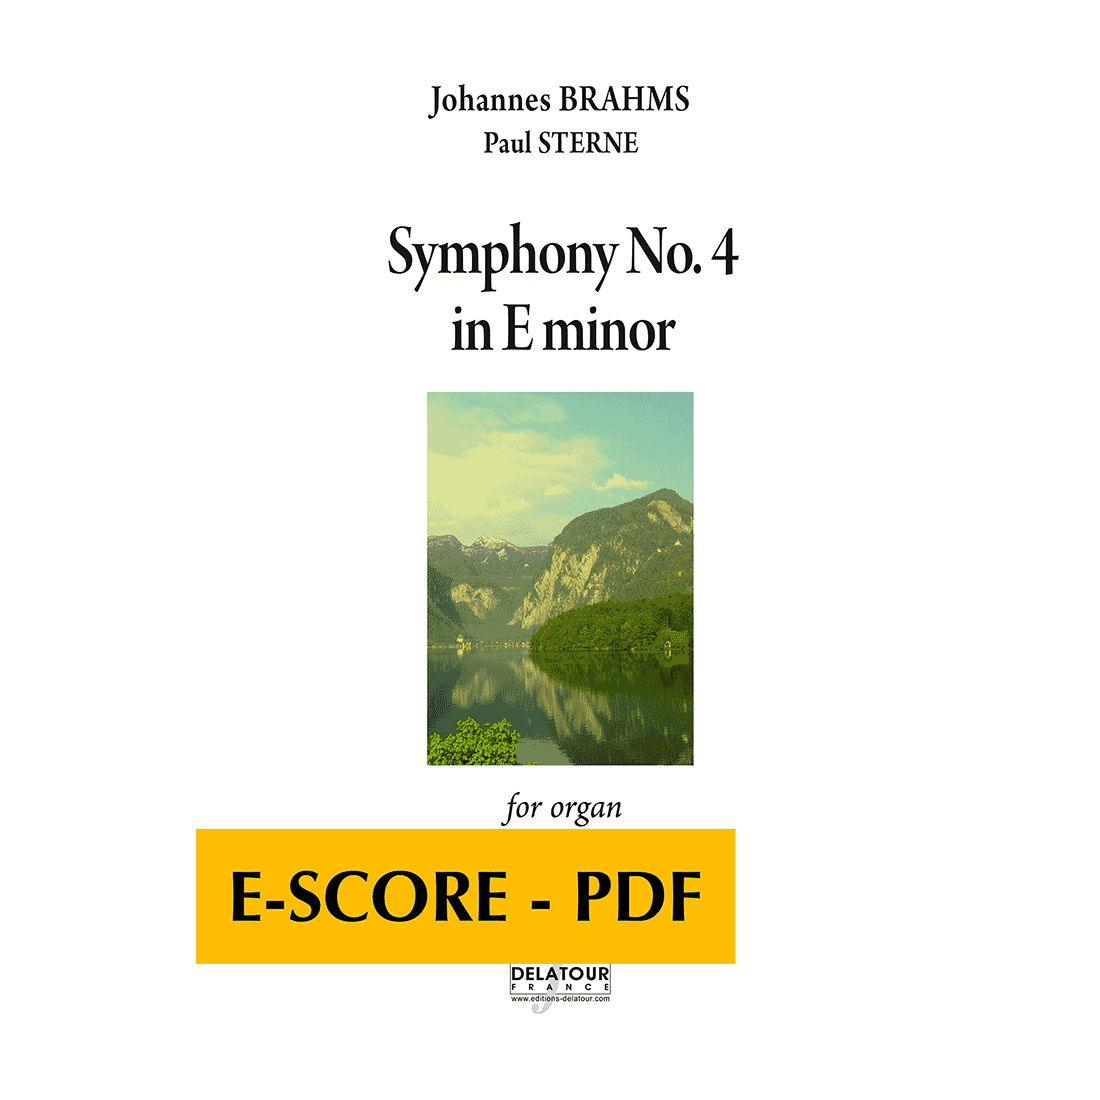 Symphony No. 4 in E minor for organ - E-score PDF